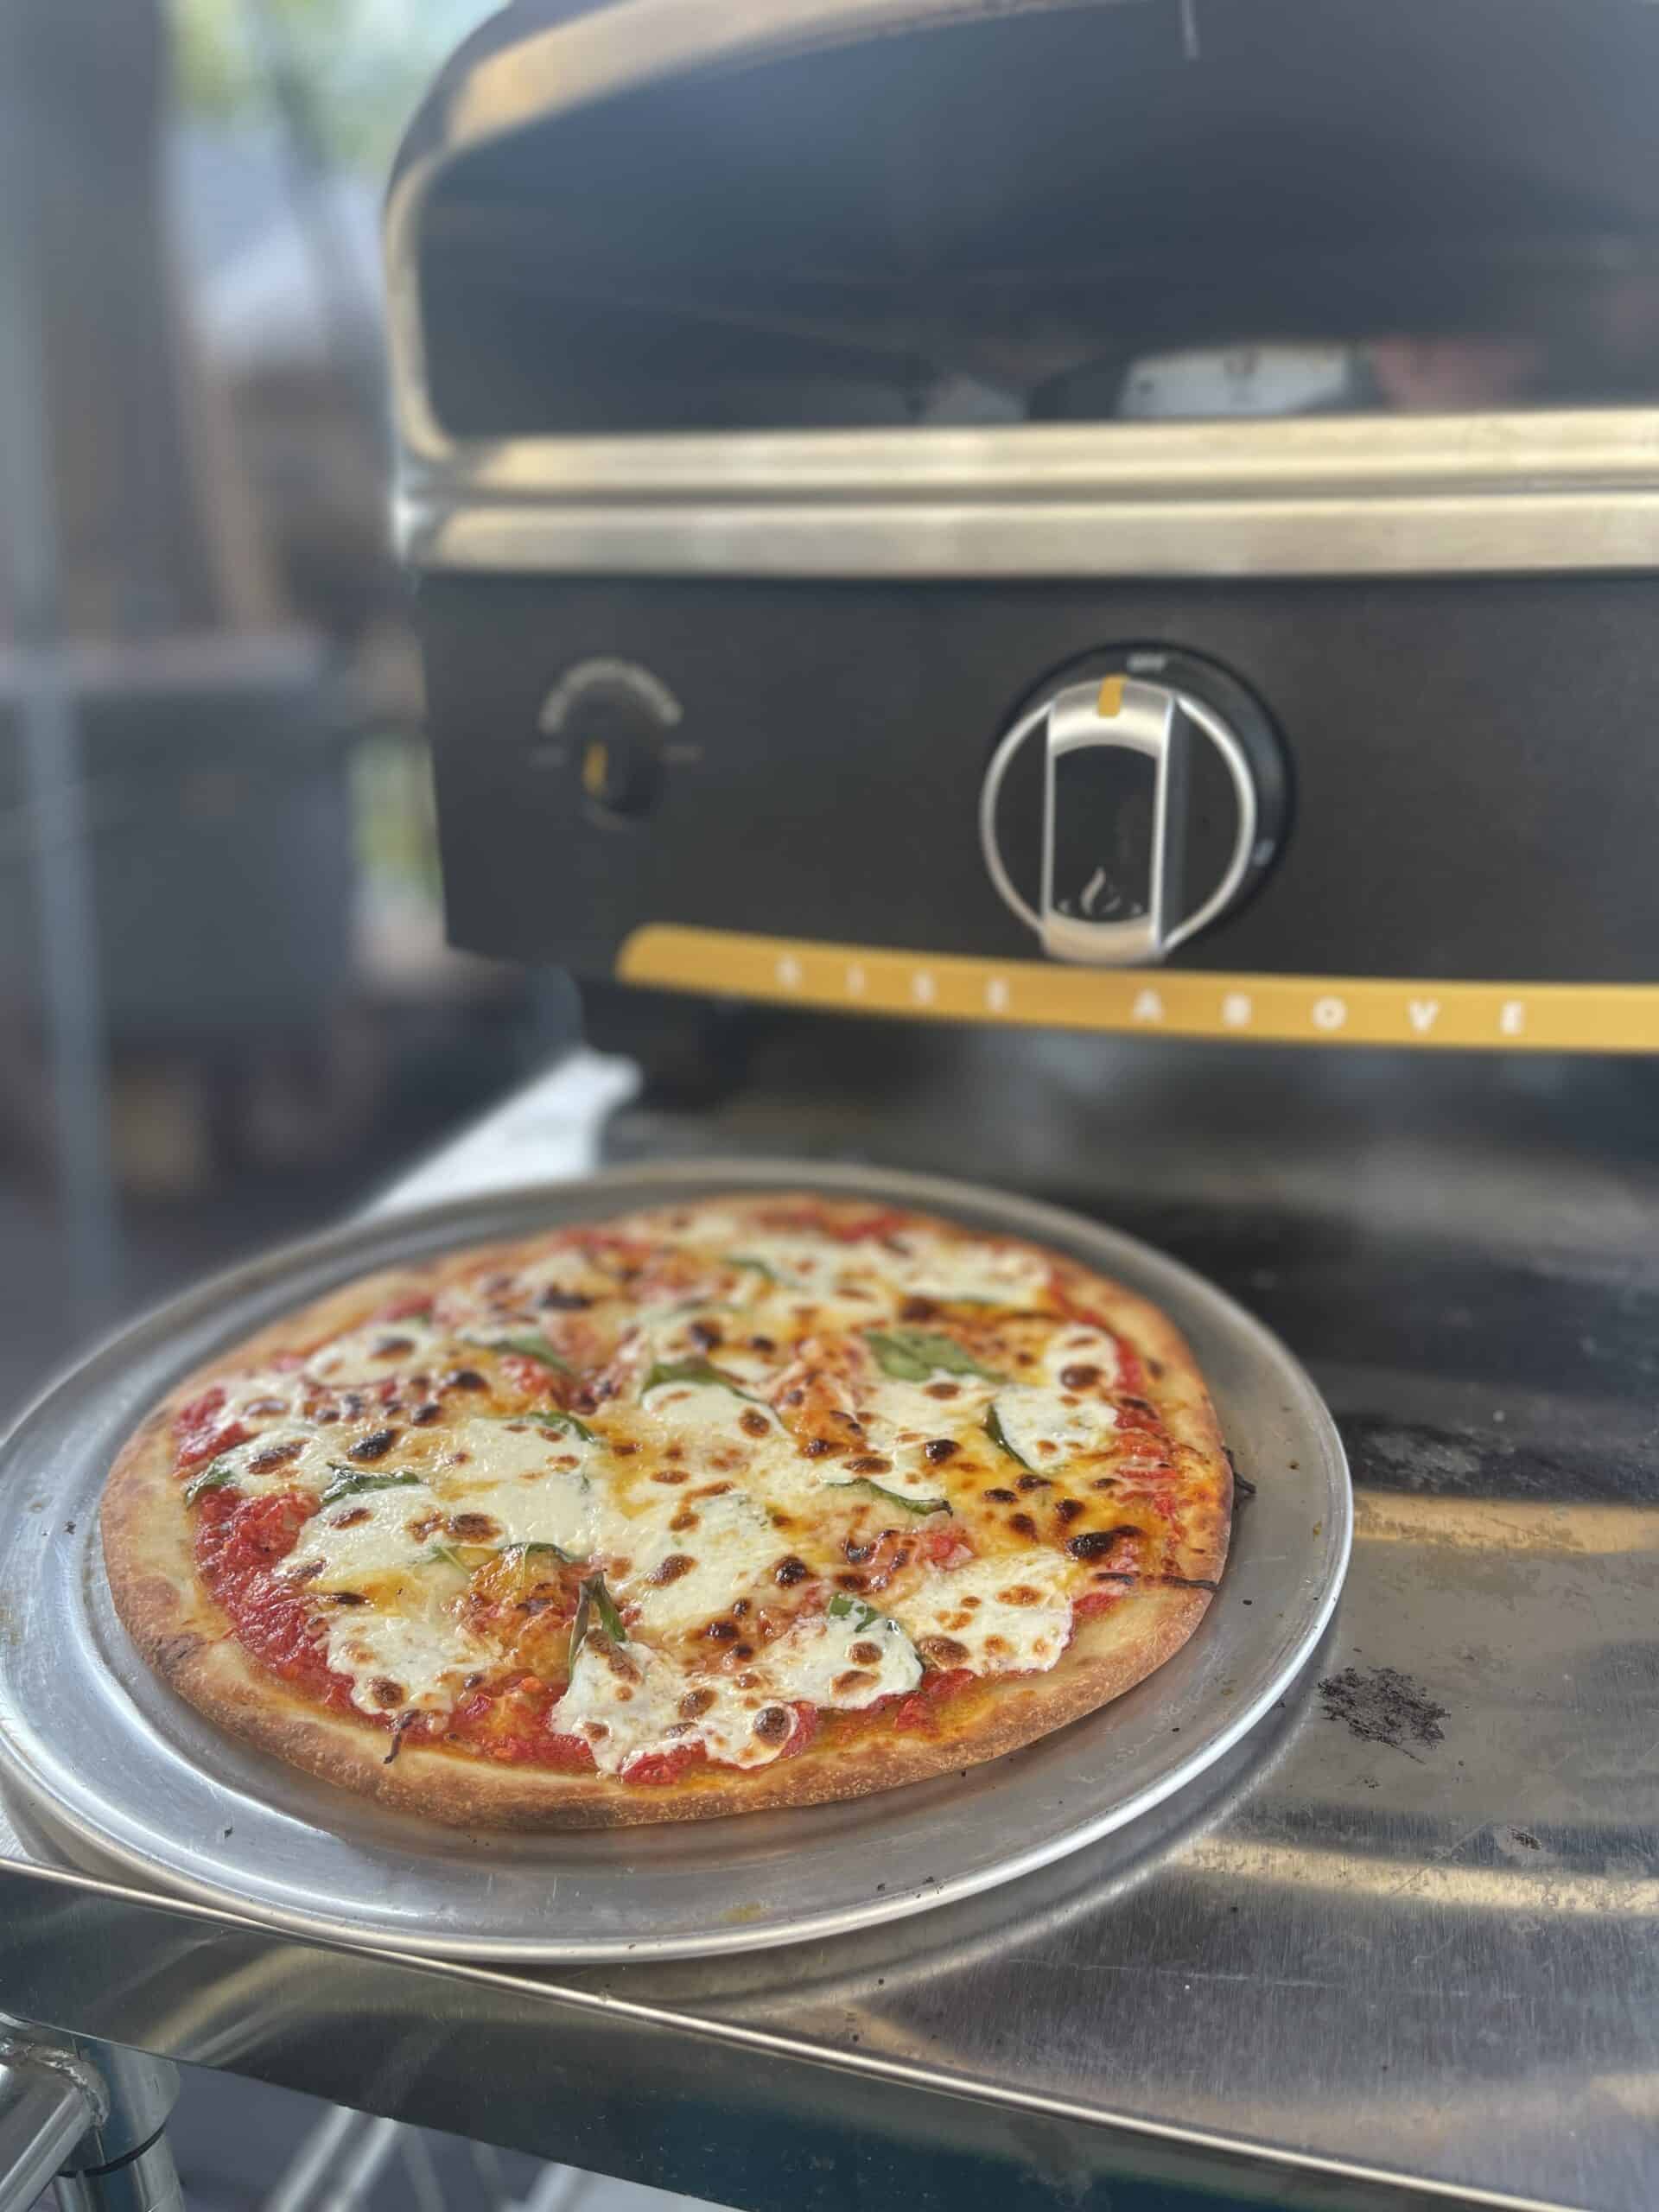 Versa 16 Outdoor Pizza Oven